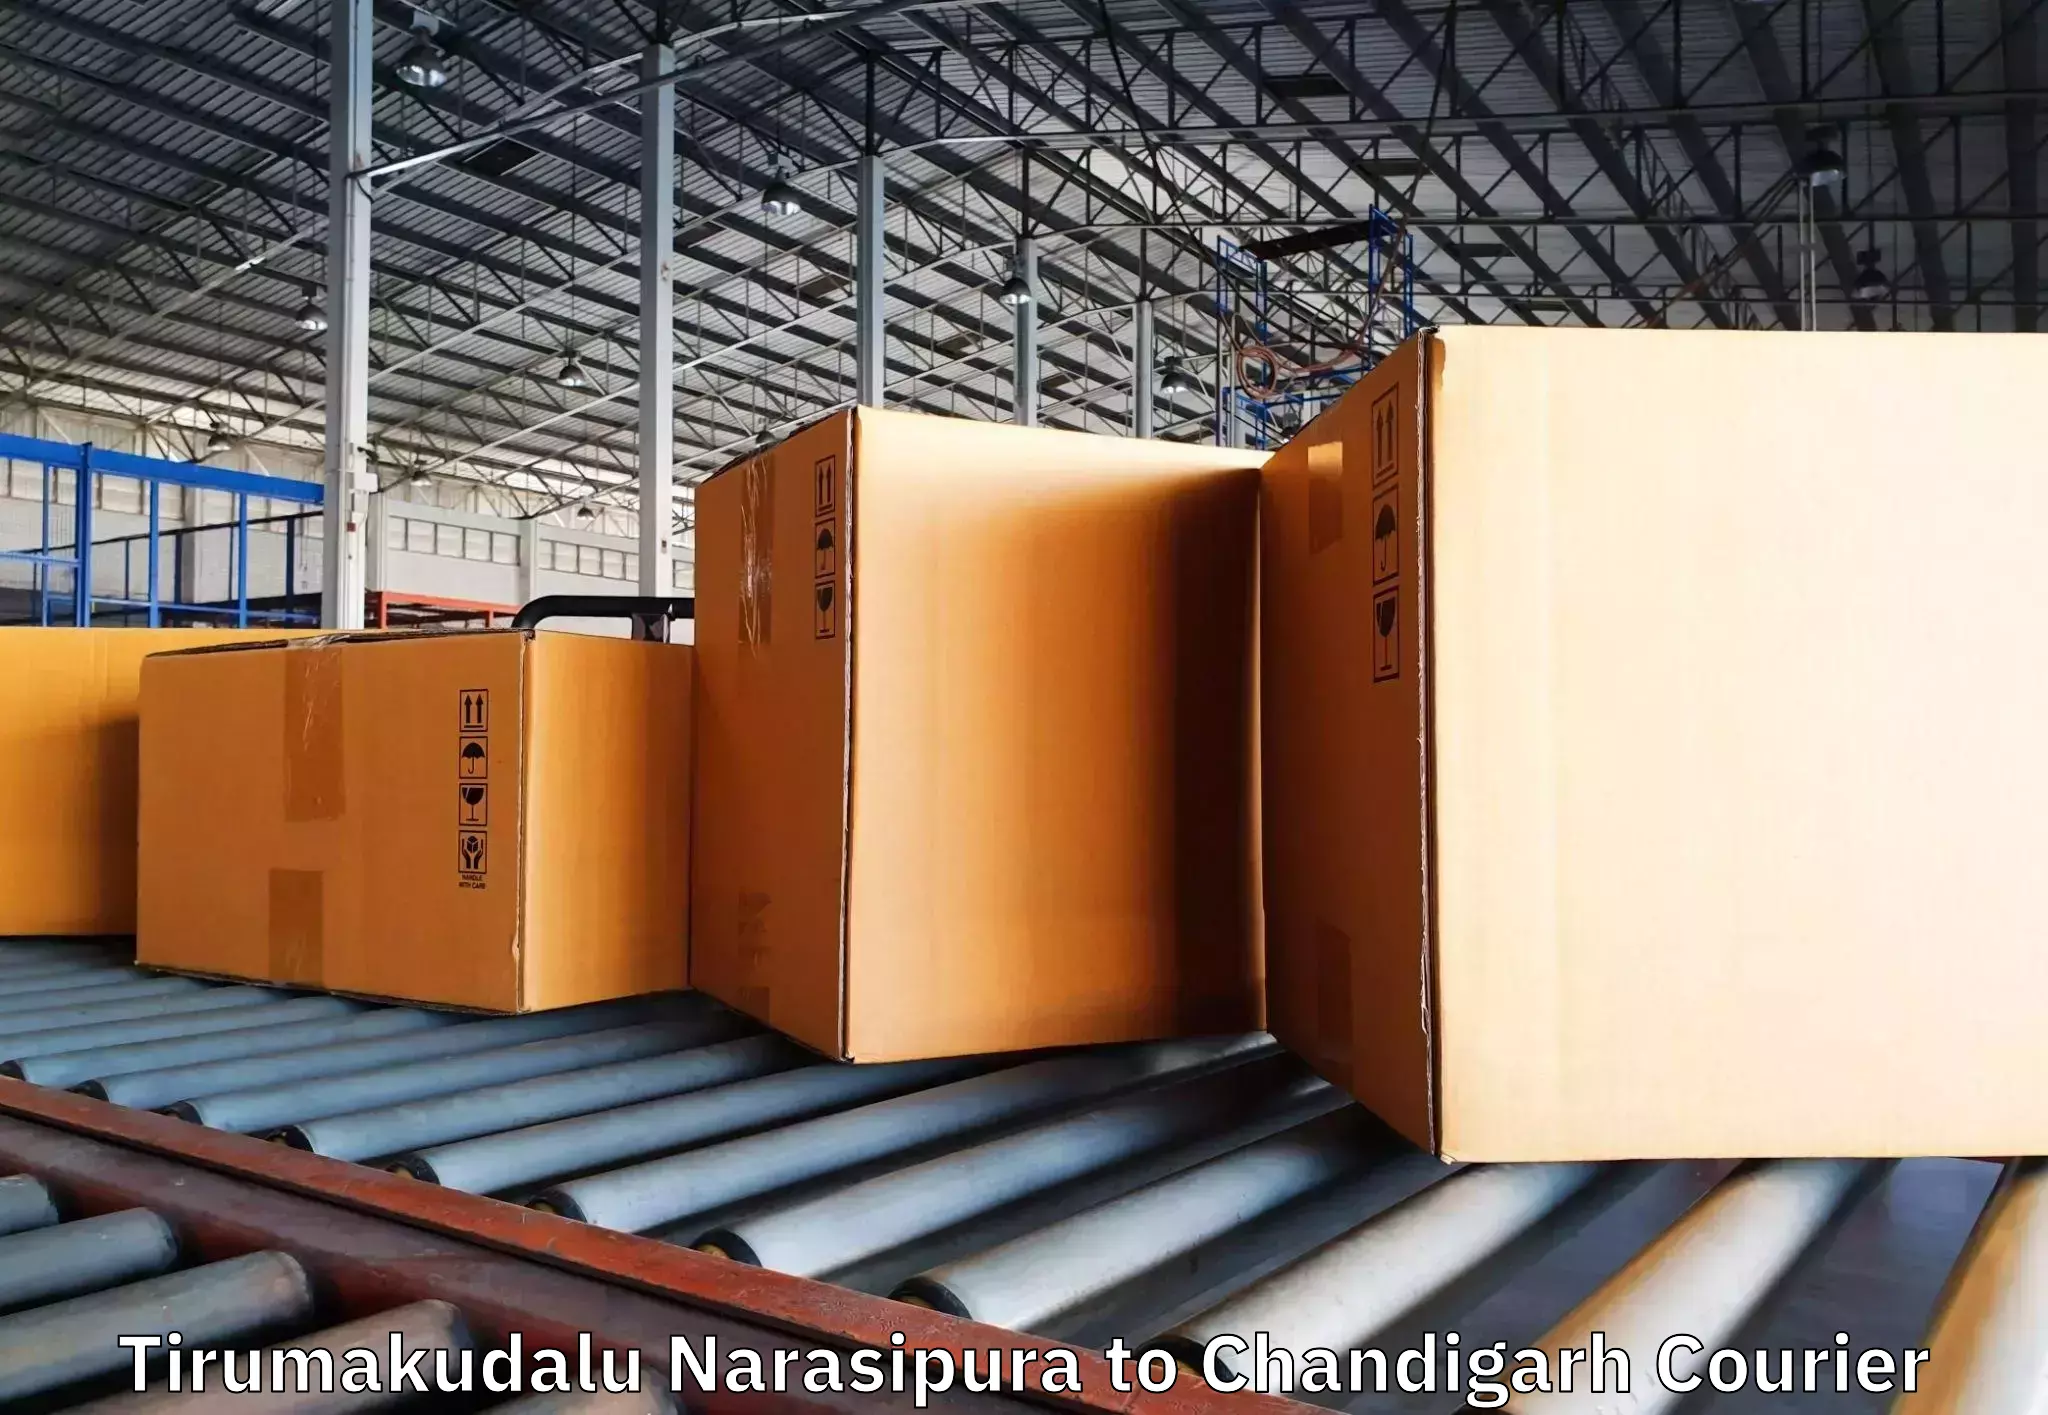 Furniture transport experts Tirumakudalu Narasipura to Chandigarh